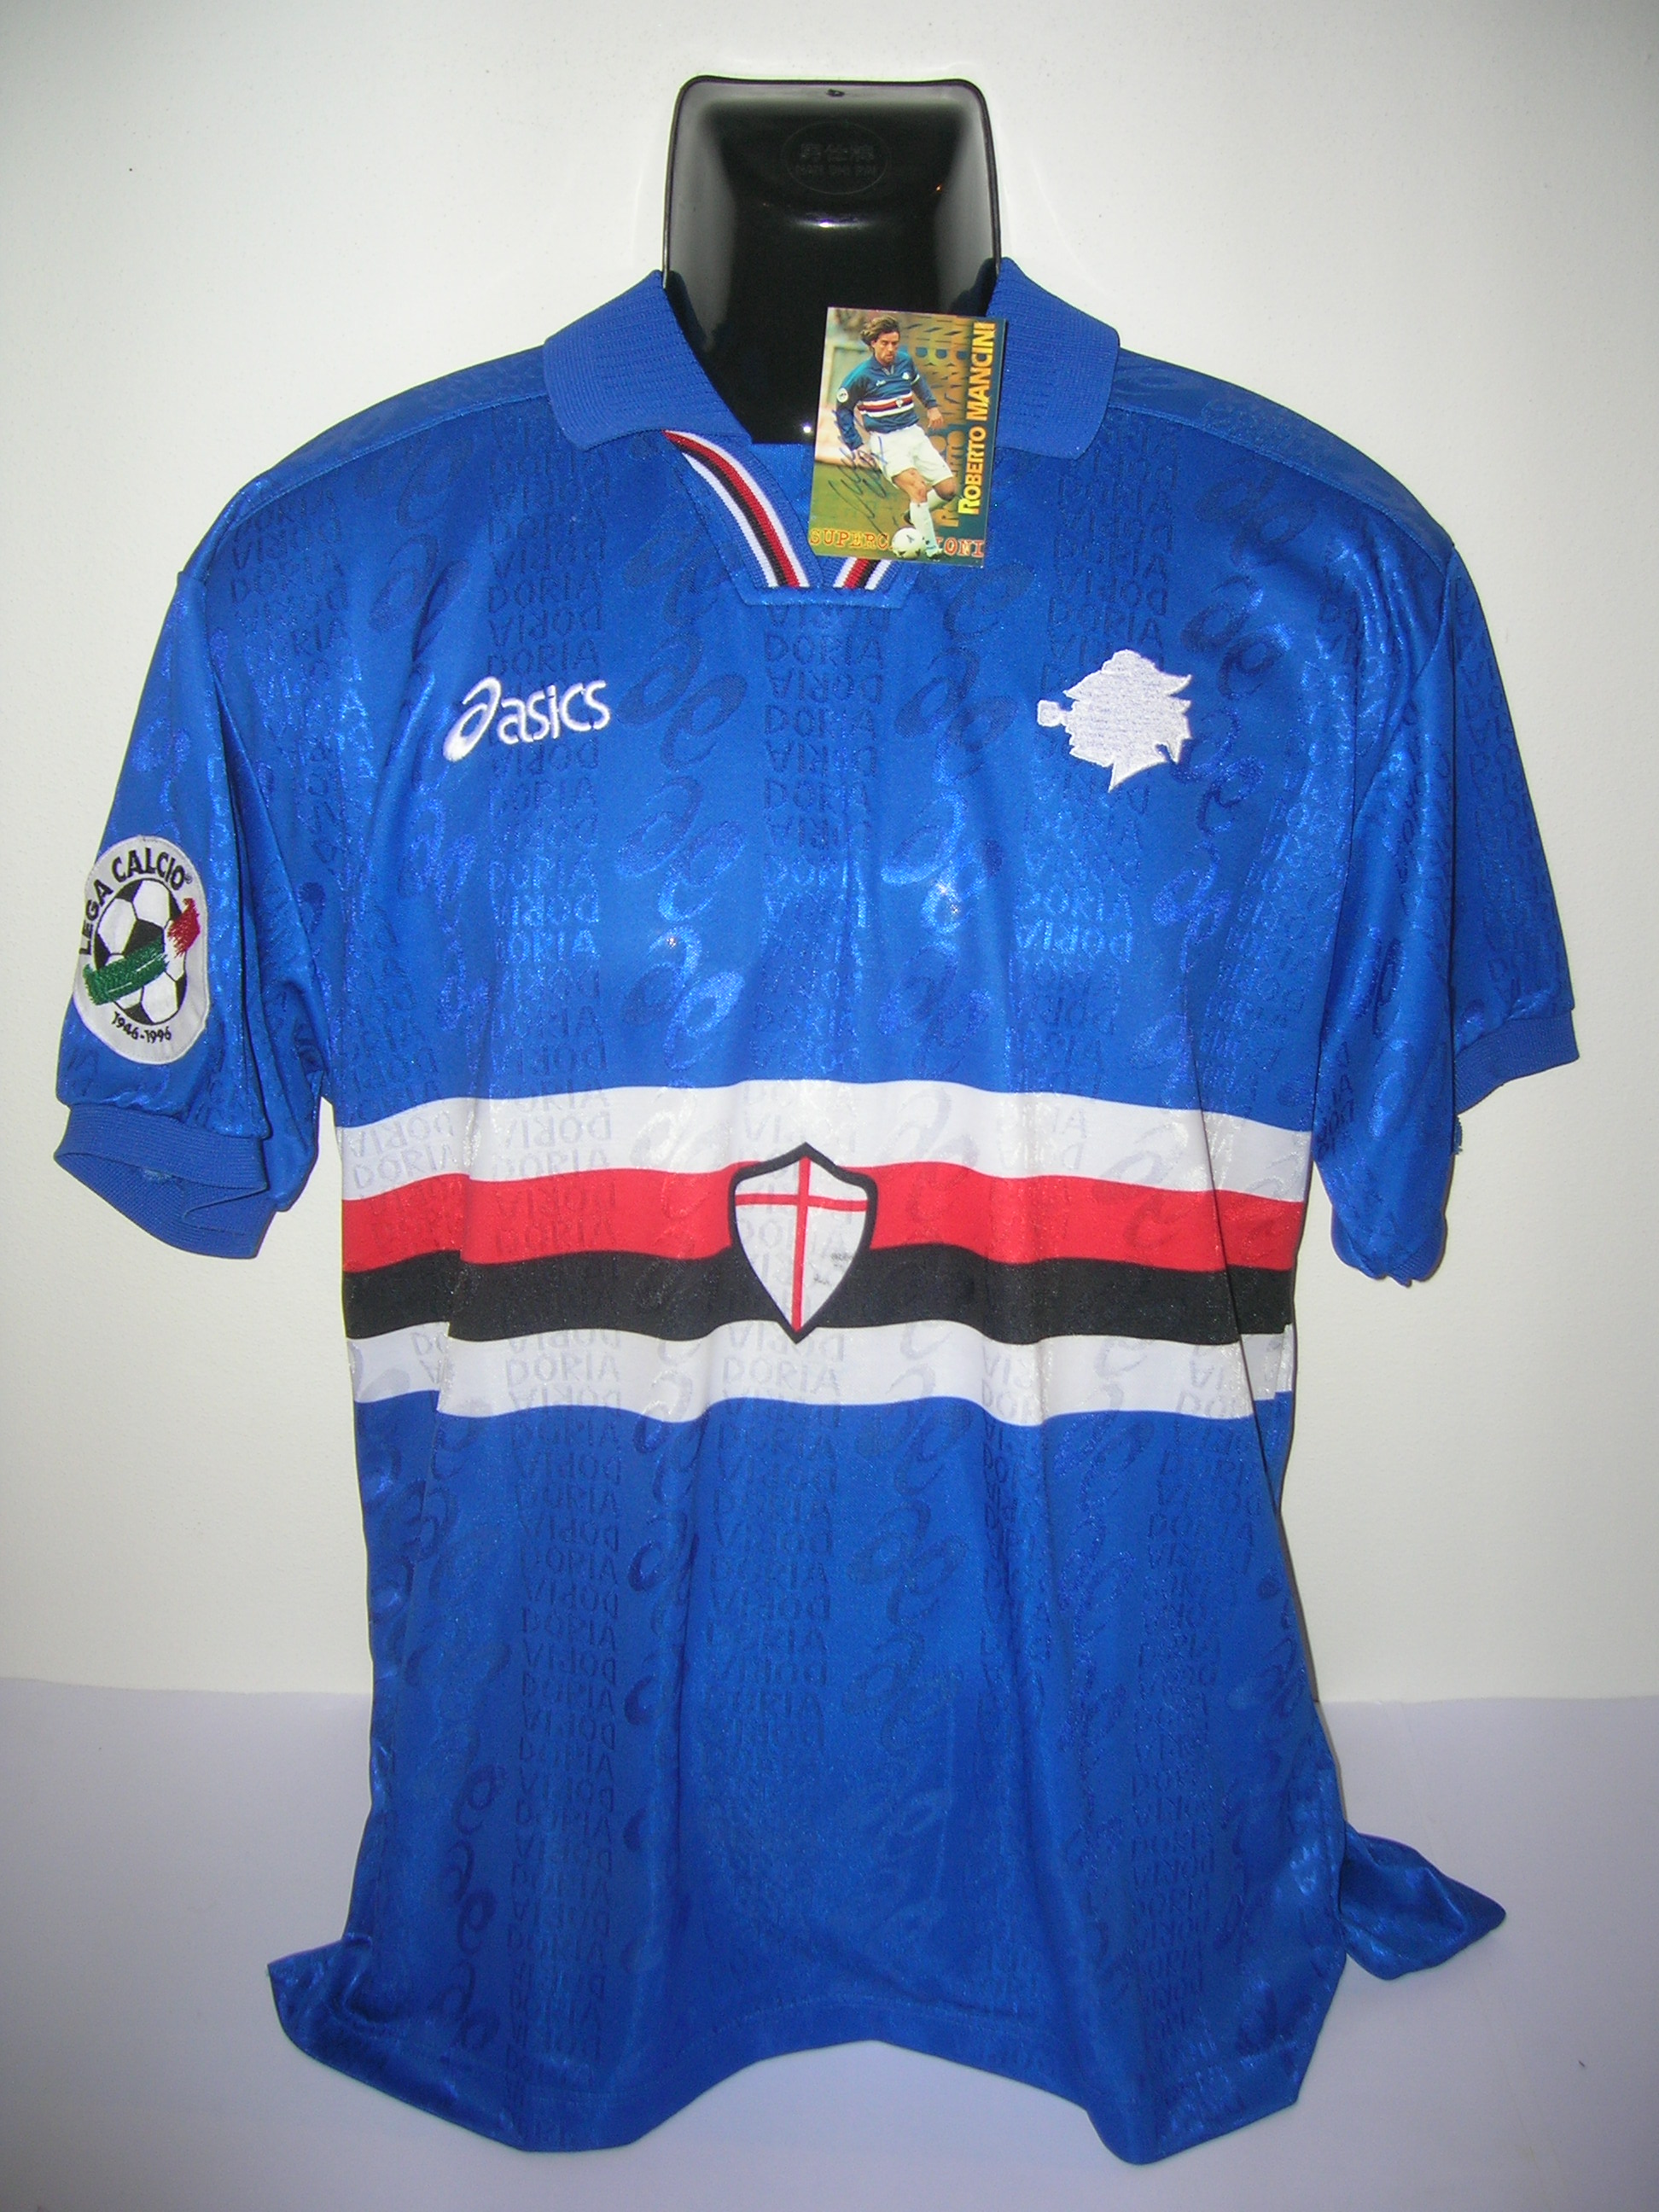 Mancini R. n.10 Sampdoria A